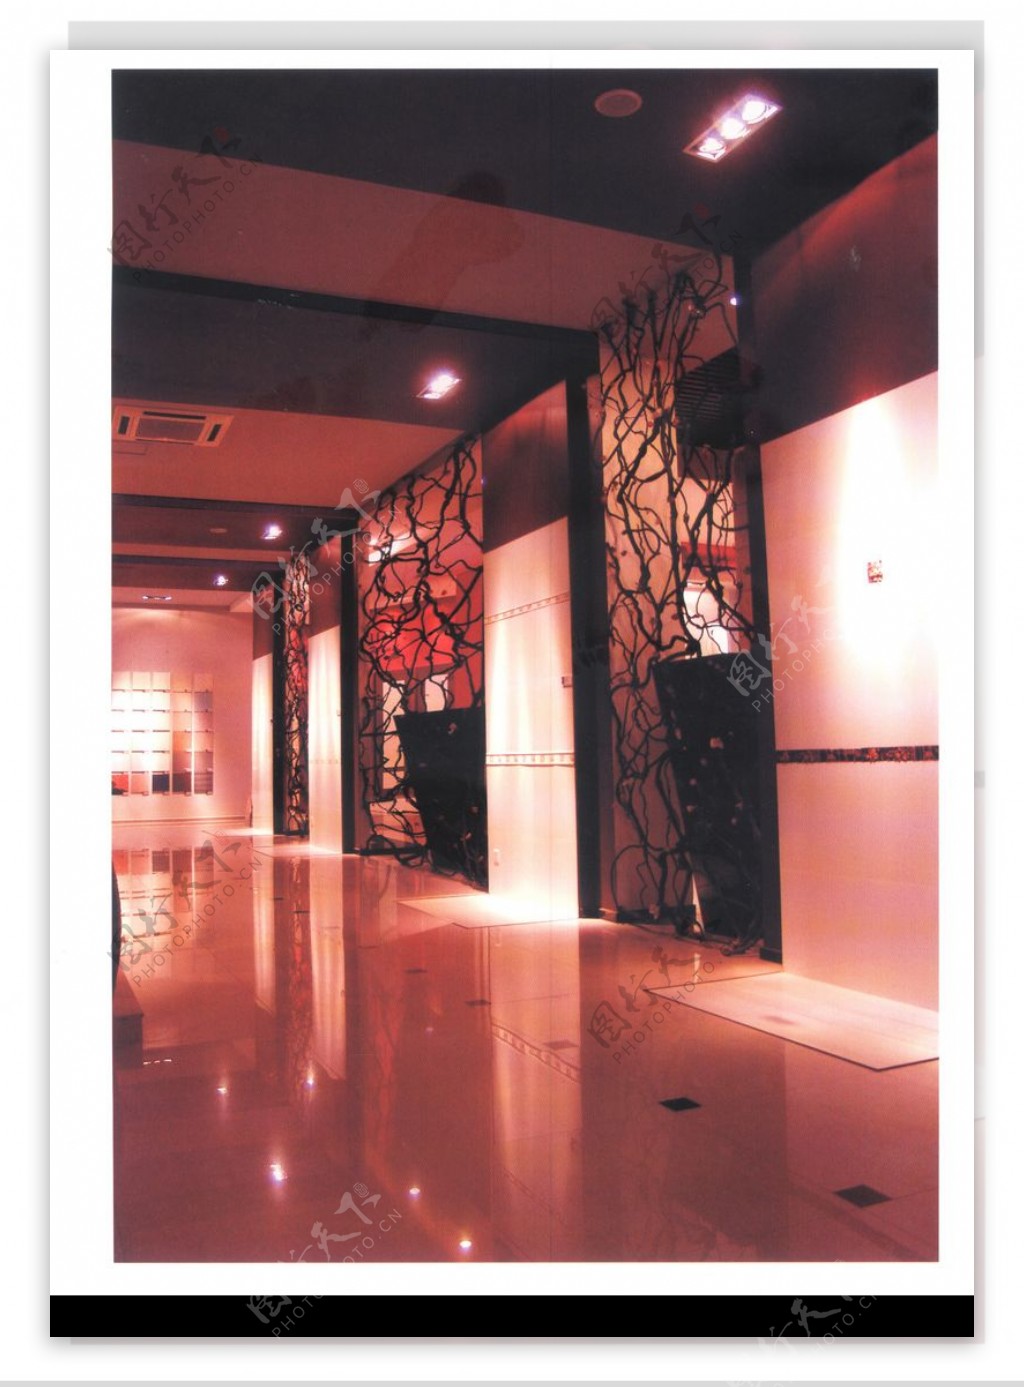 亚太室内设计年鉴2007商业展览展示0046